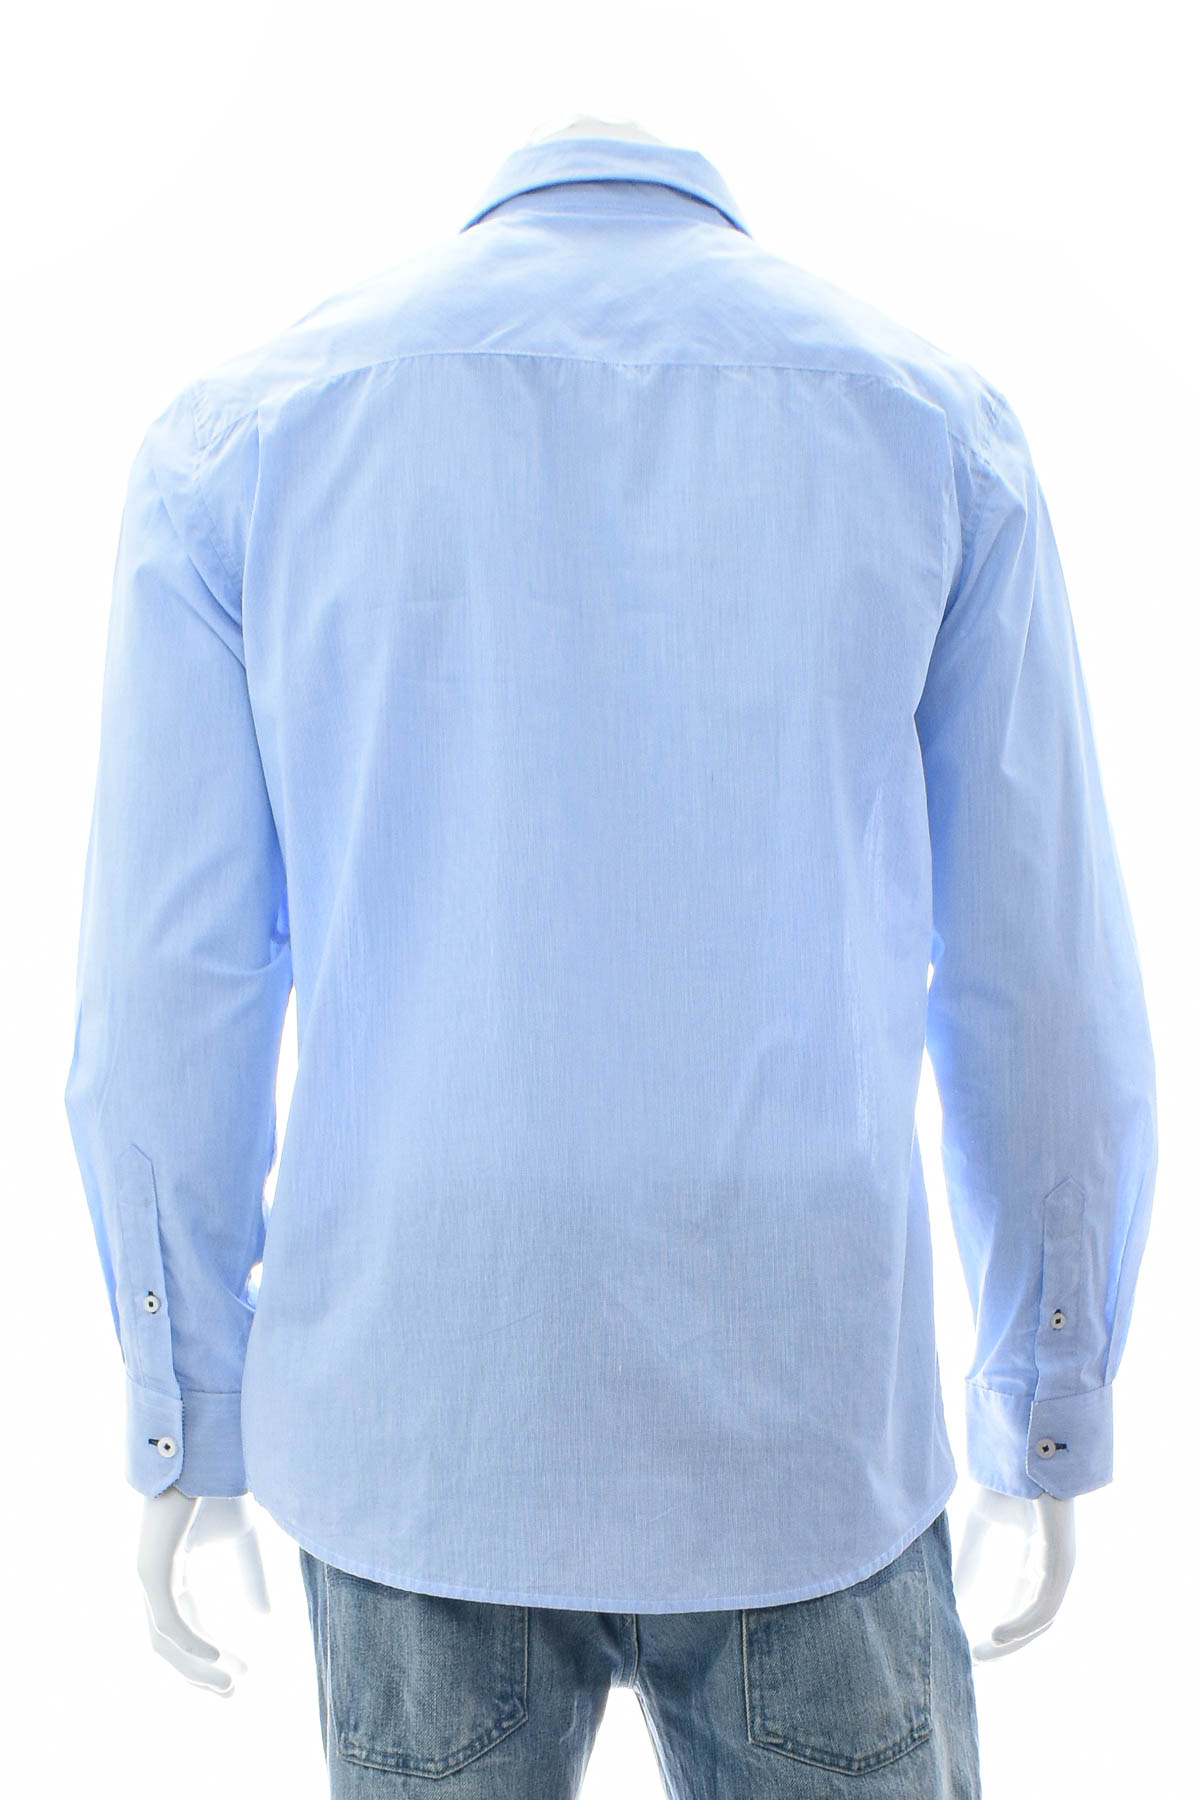 Ανδρικό πουκάμισο - Reward - 1